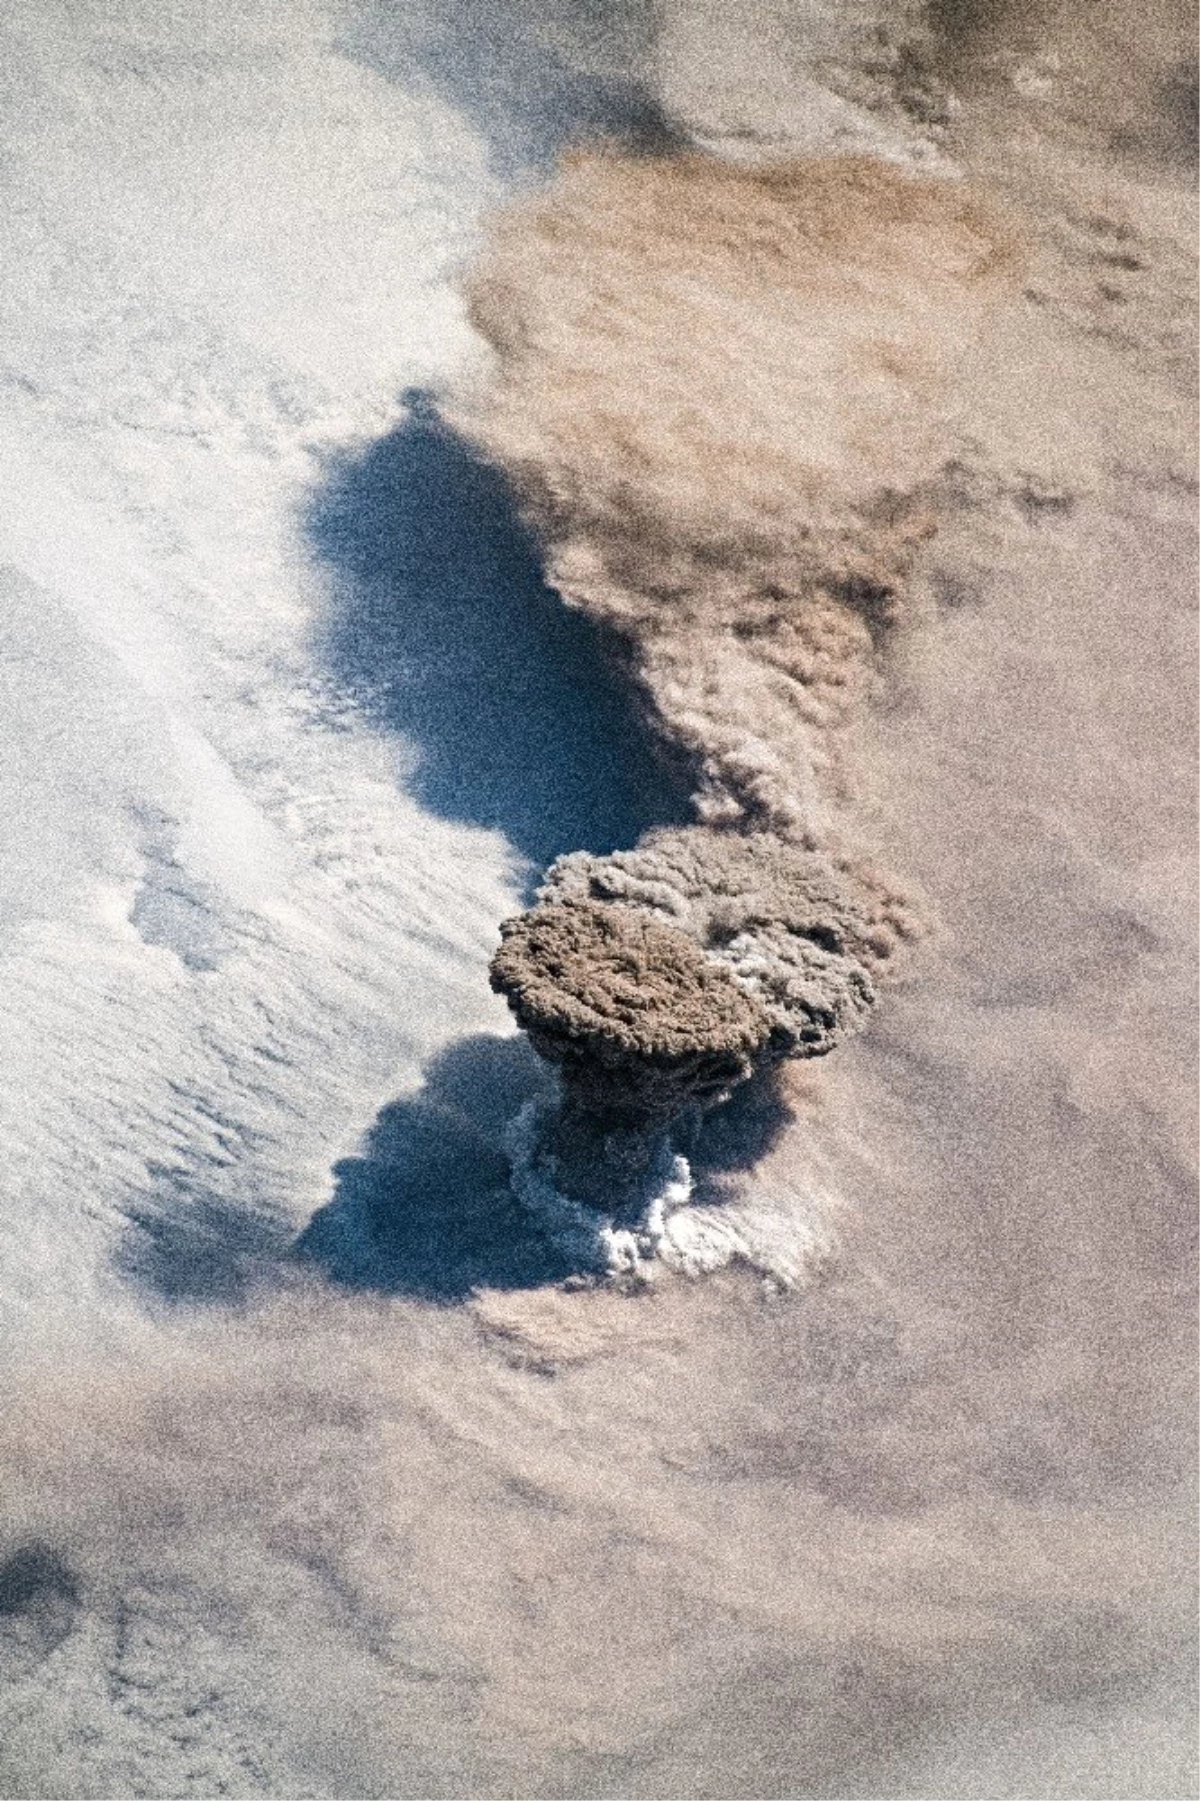 Raikoke volkanının patlaması uzaydan görüntülendi